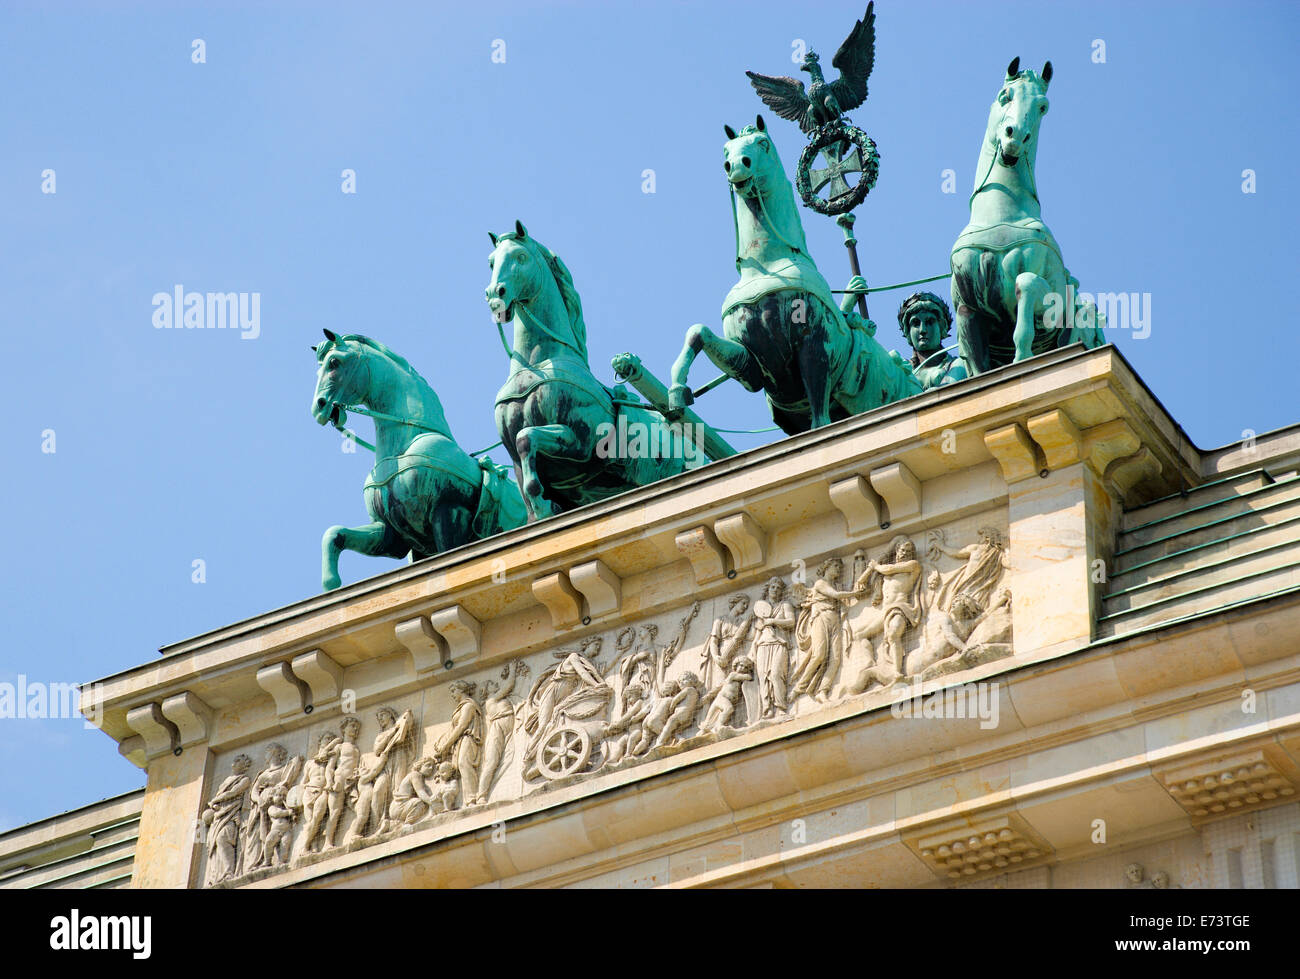 Germania, Berlino Mitte, la Porta di Brandeburgo o Brandenburger Tor in Pariser Platz che conduce al viale Unter den Linden e i palazzi reali Foto Stock